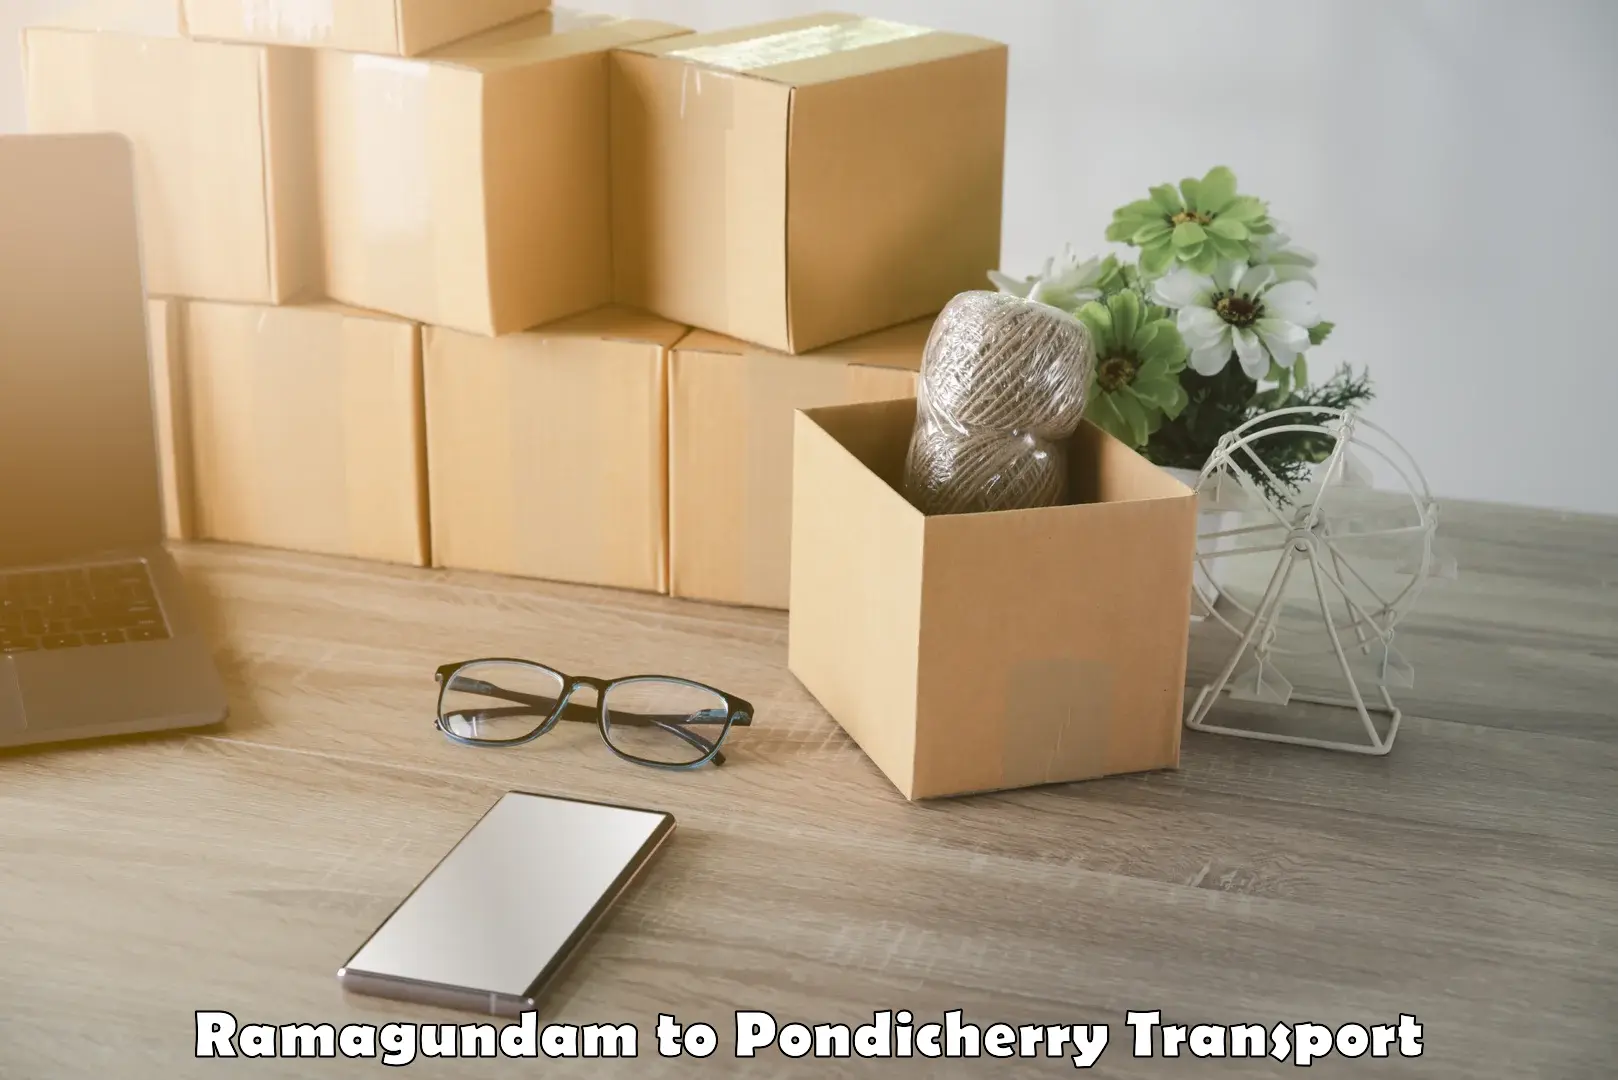 Transport services in Ramagundam to Pondicherry